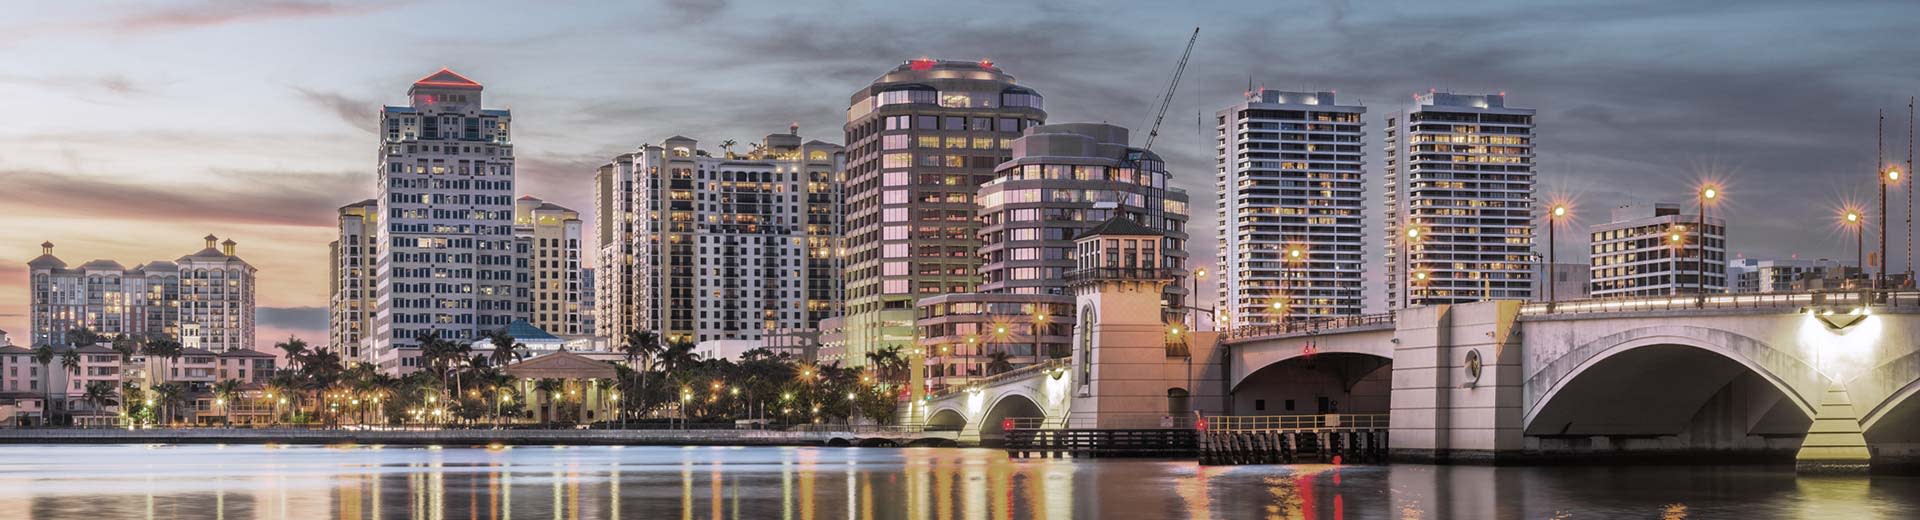 Hotels und Hochhausunterkünfte dominieren die Skyline in Palm Beach.